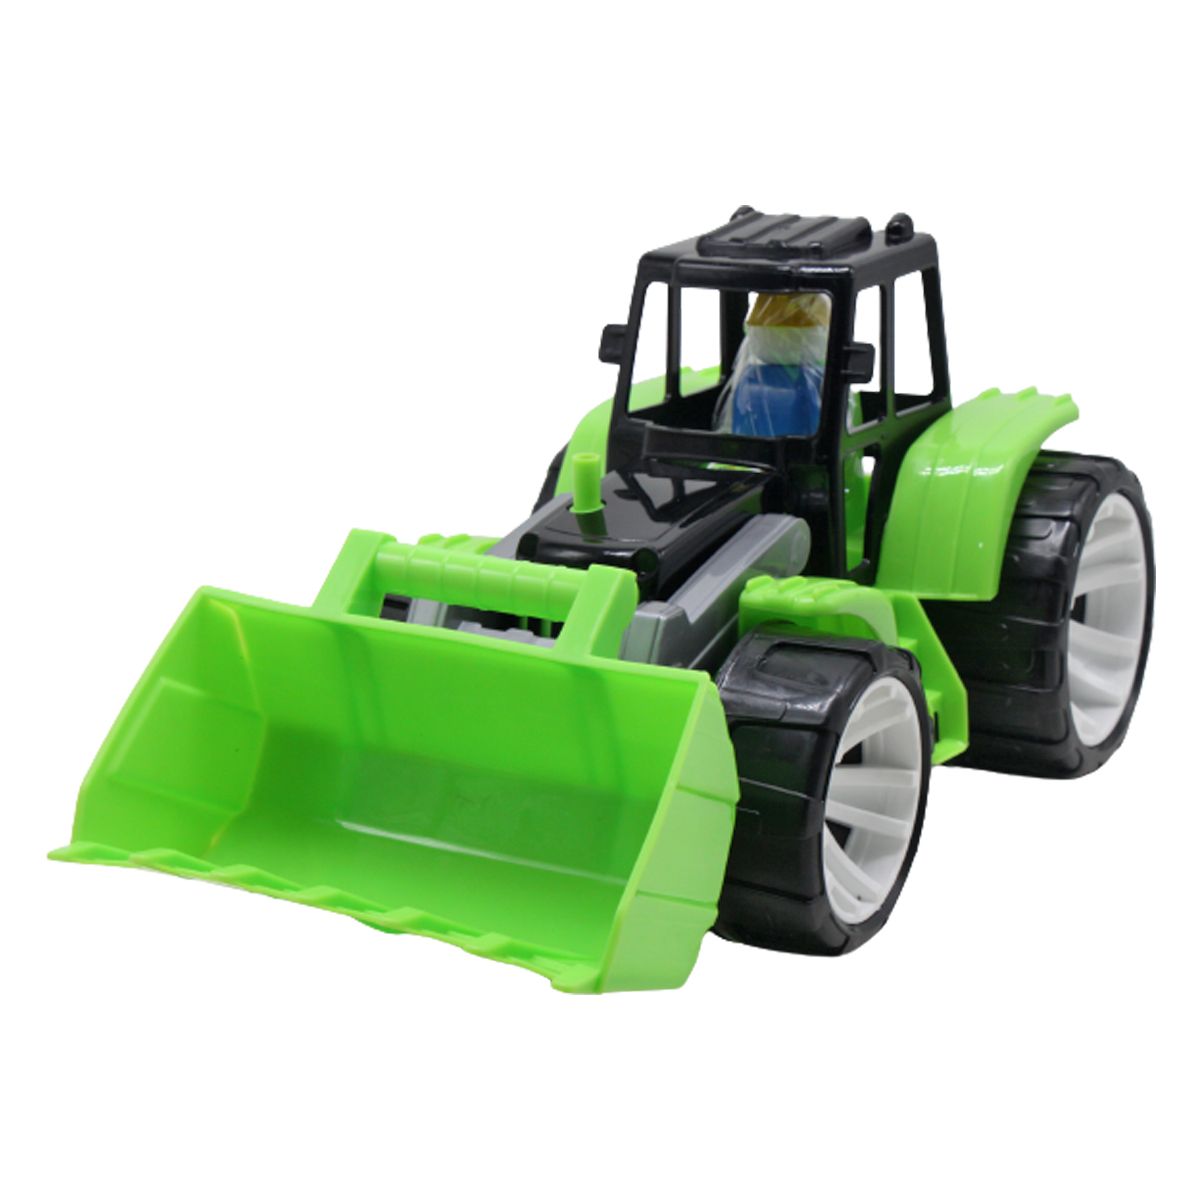 Пластиковый трактор с ковшом (черно-зеленый)